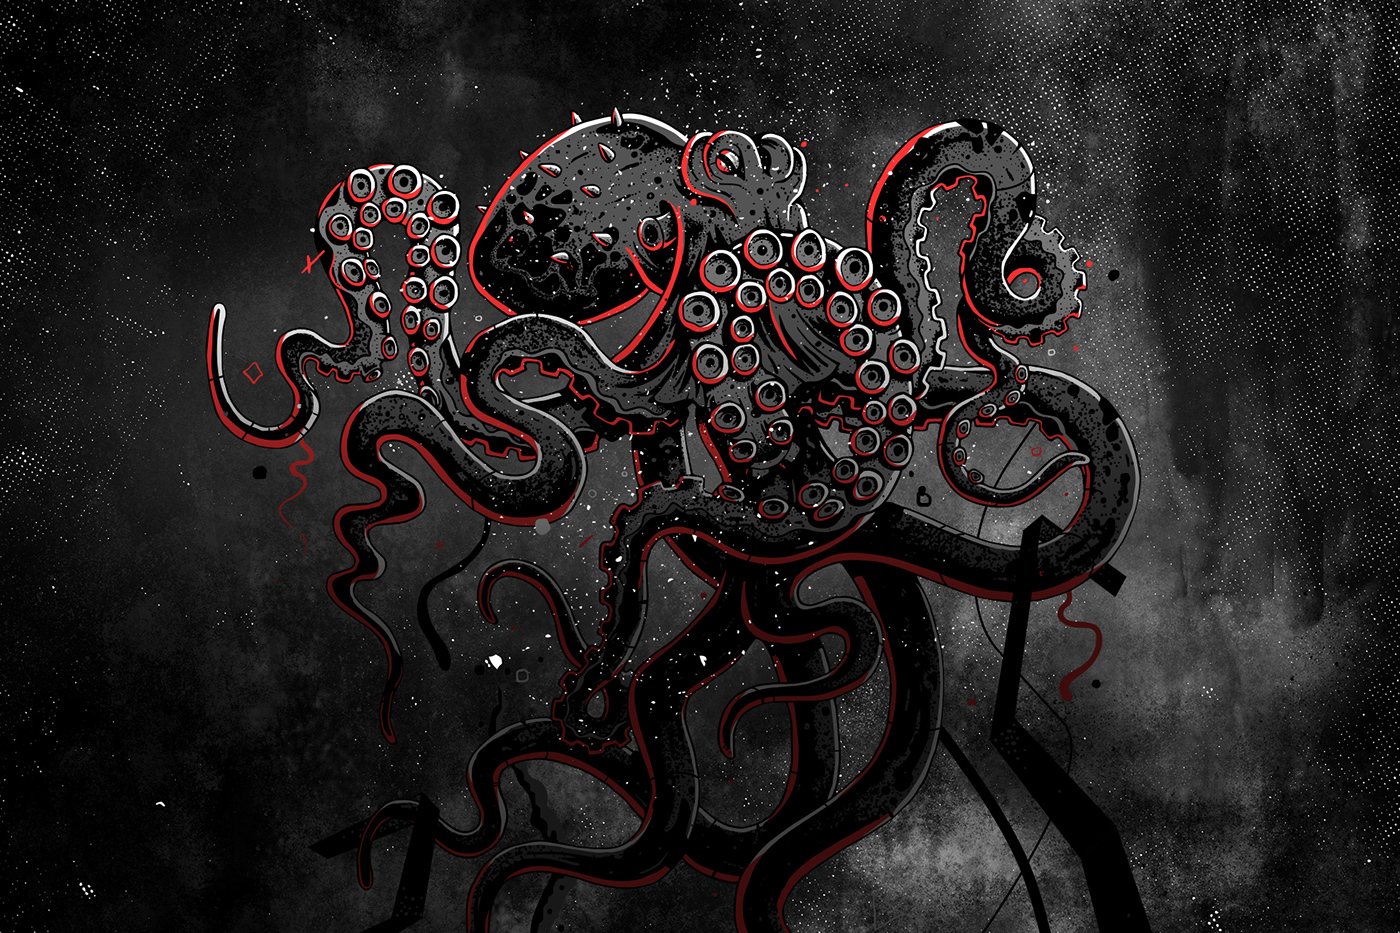 octopus kraken metal festival concert open air Metalcore Hardcore